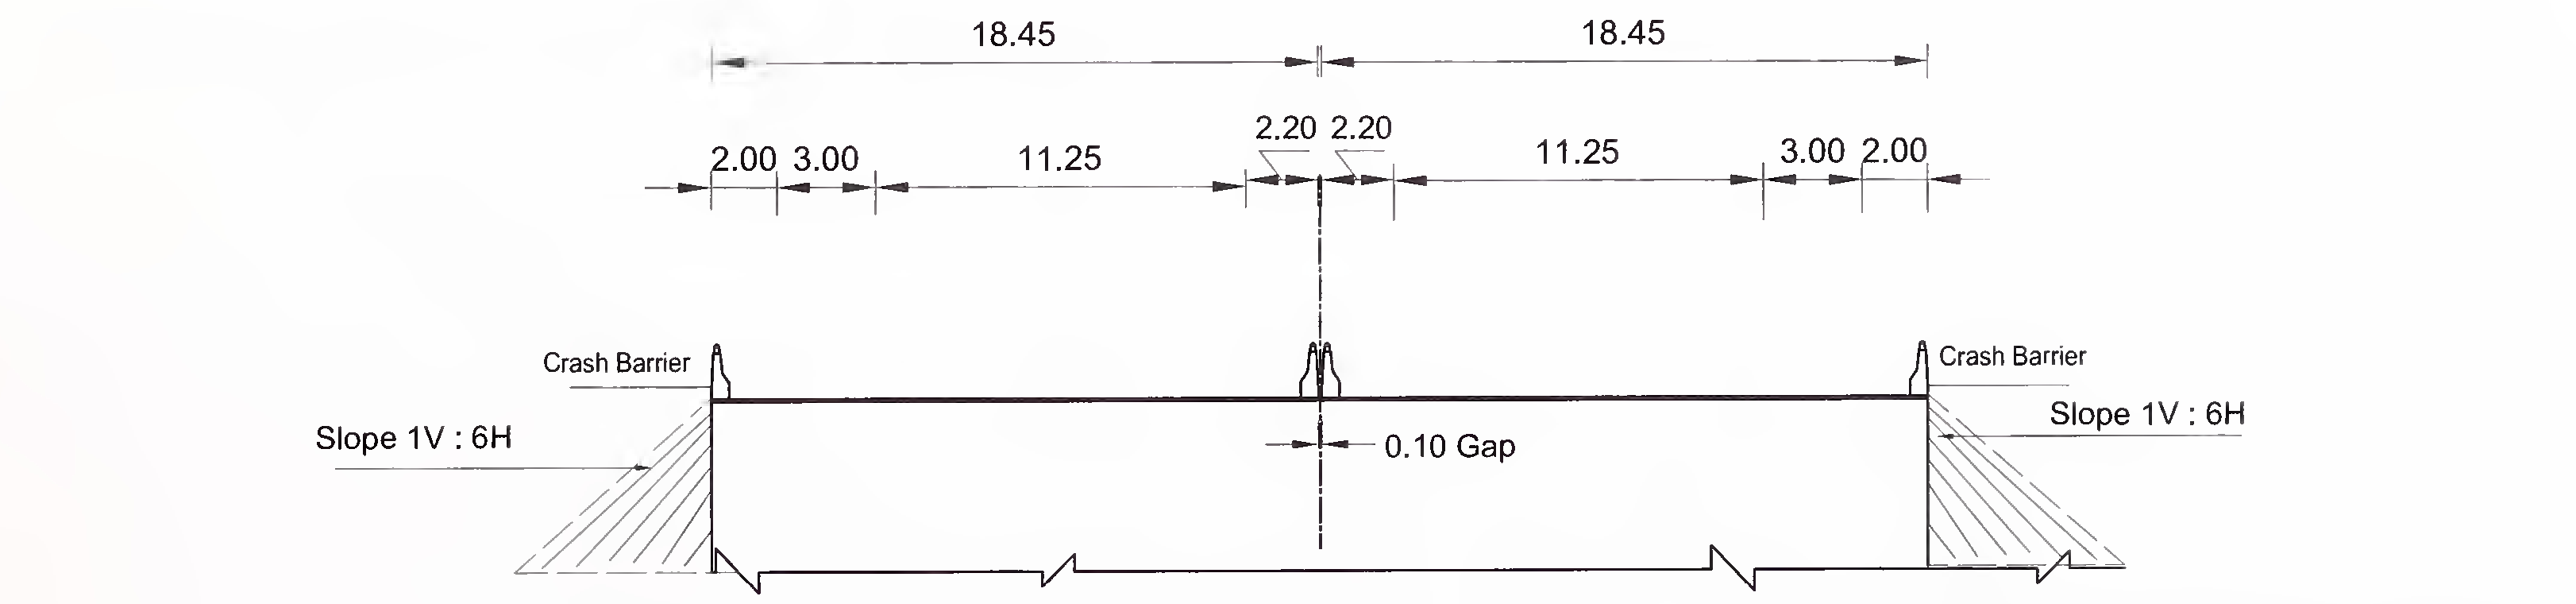 ફિગ .6.4 (બી) ફ્લશ મેડિયન સાથે 6-લેન (2 × 3) એક્સપ્રેસ હાઇવે માટે સ્લેબ અને બ Typeક્સ ટાઇપ કલ્વરટનો લાક્ષણિક ક્રોસ-સેક્શન